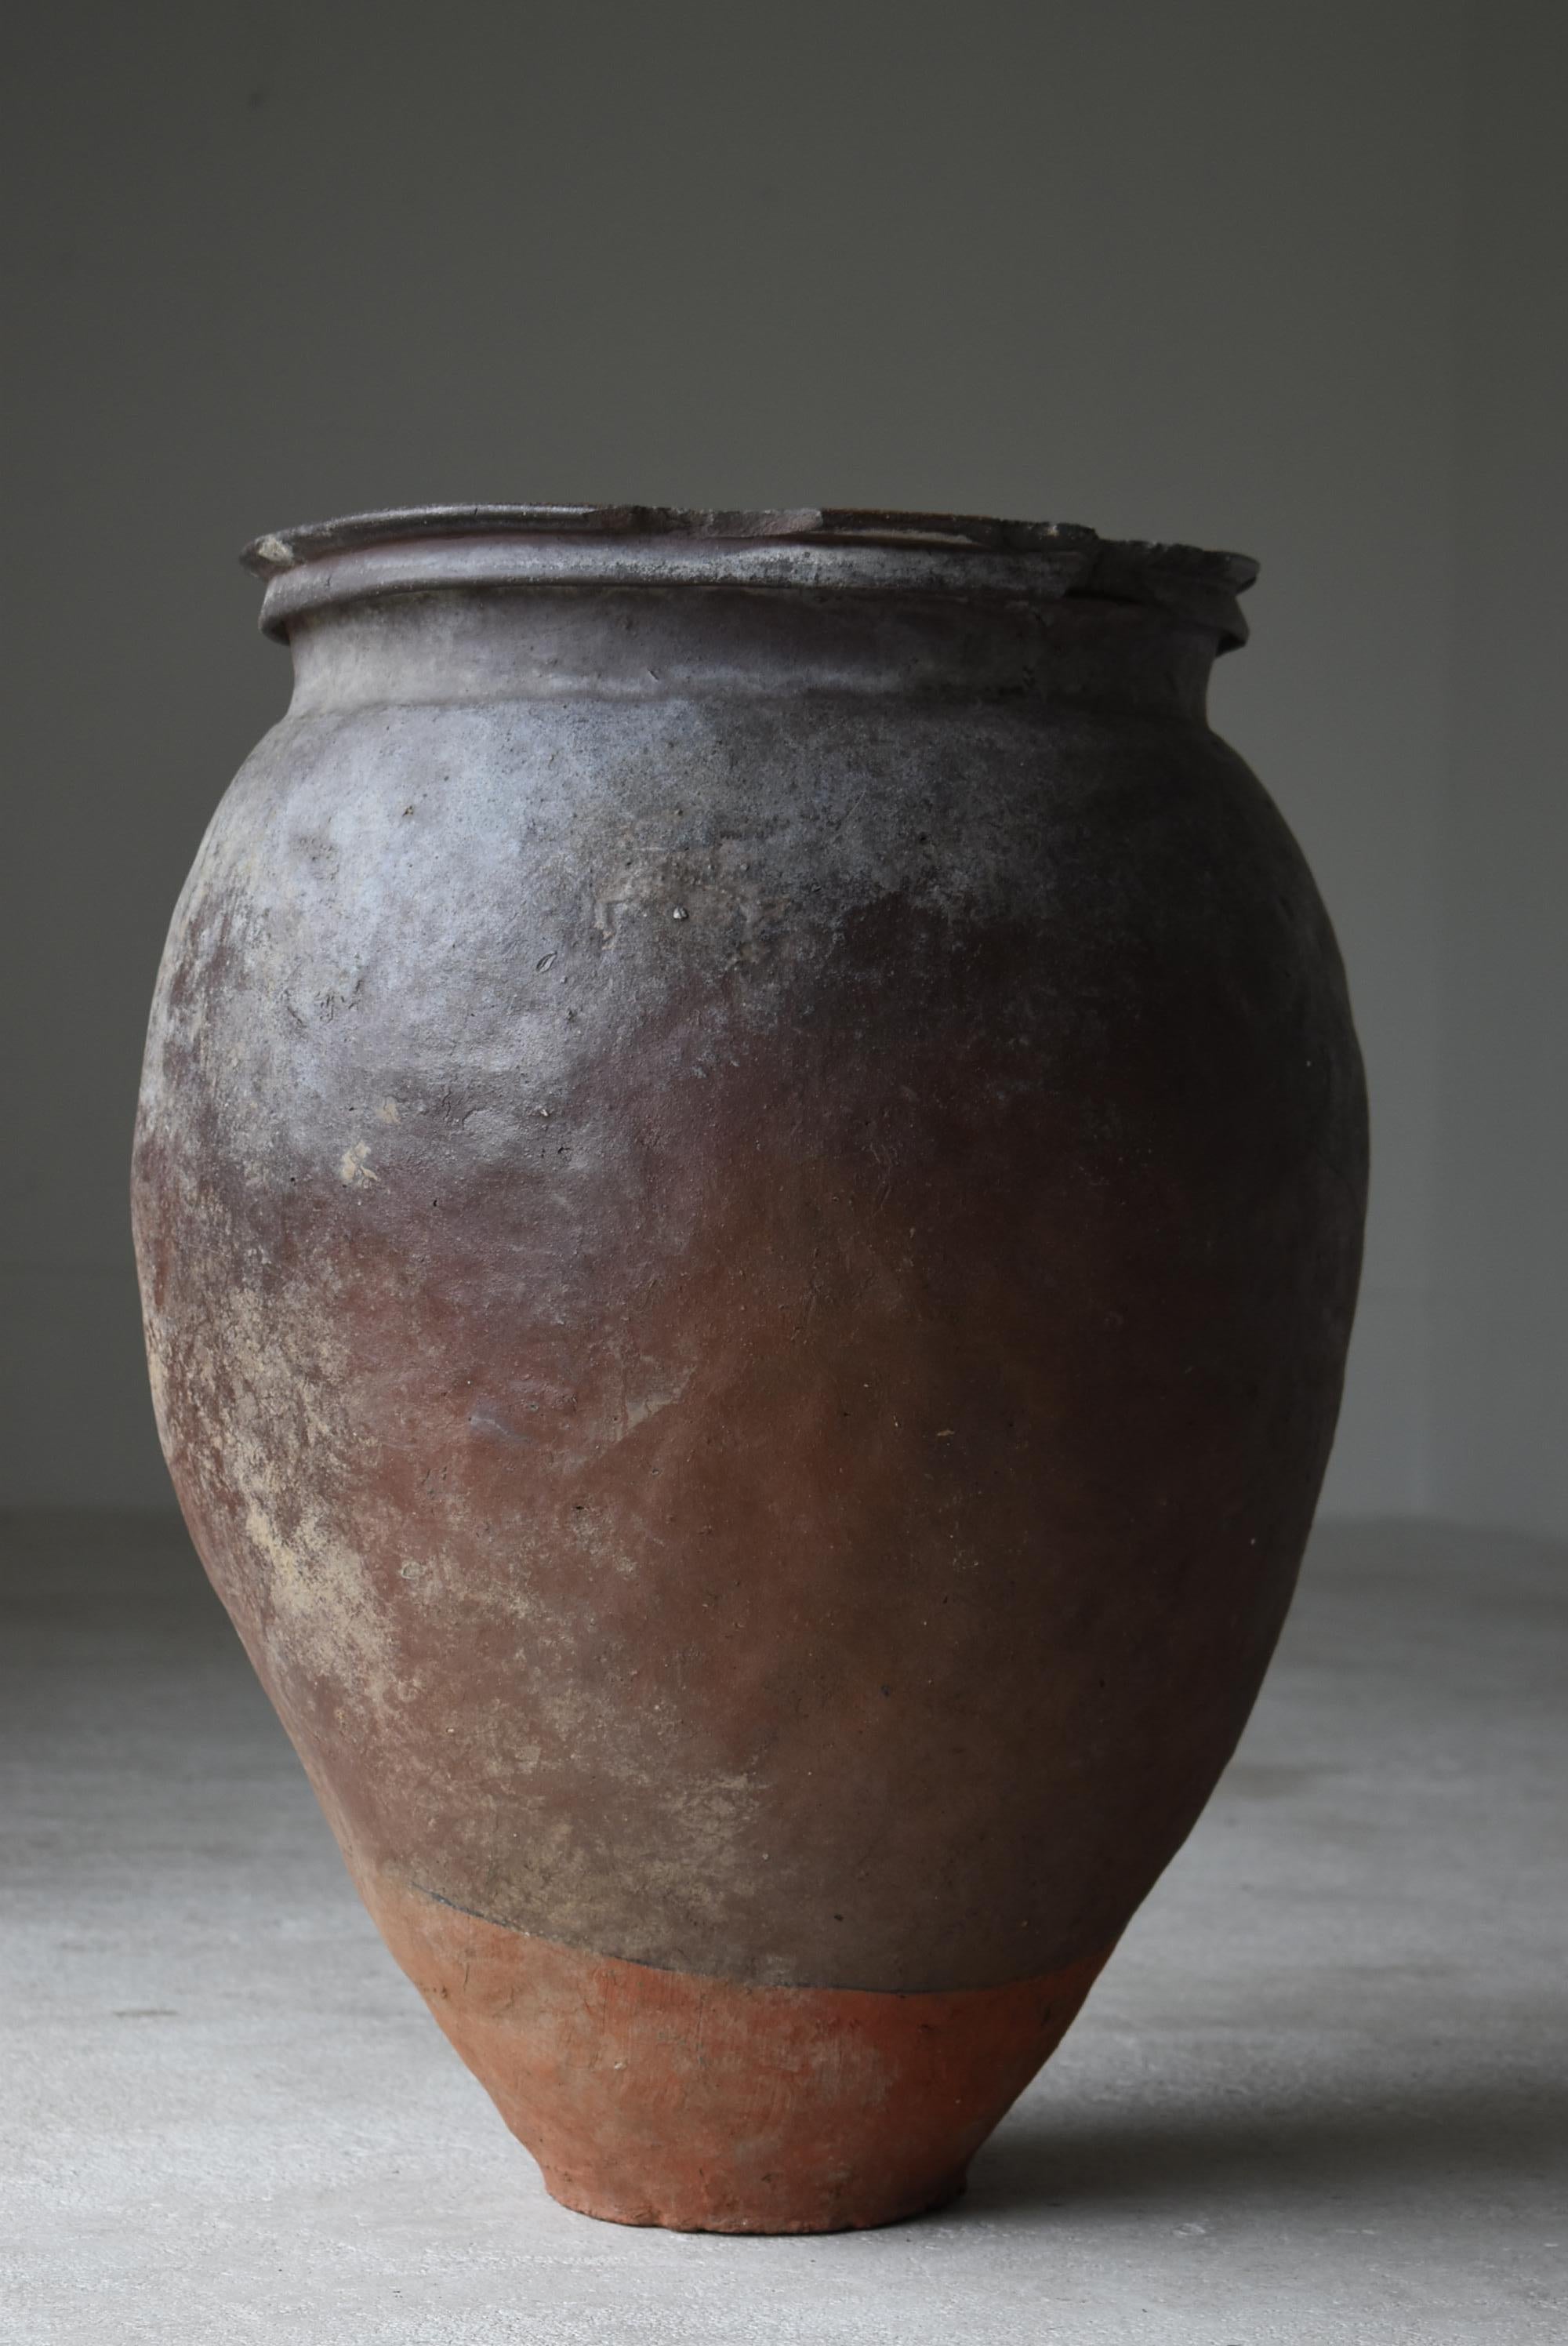 Japanese Old Pottery 1700s-1800s/Antique Flower Vase Vessel Jar Tsubo Ceramic 1